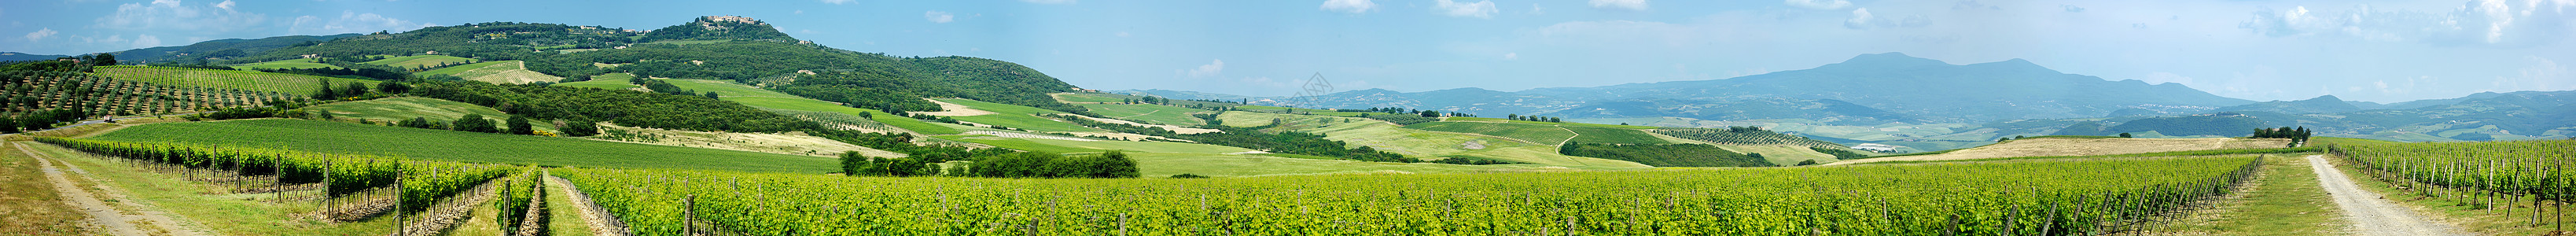 意大利美丽的葡萄酒田 意大利图片